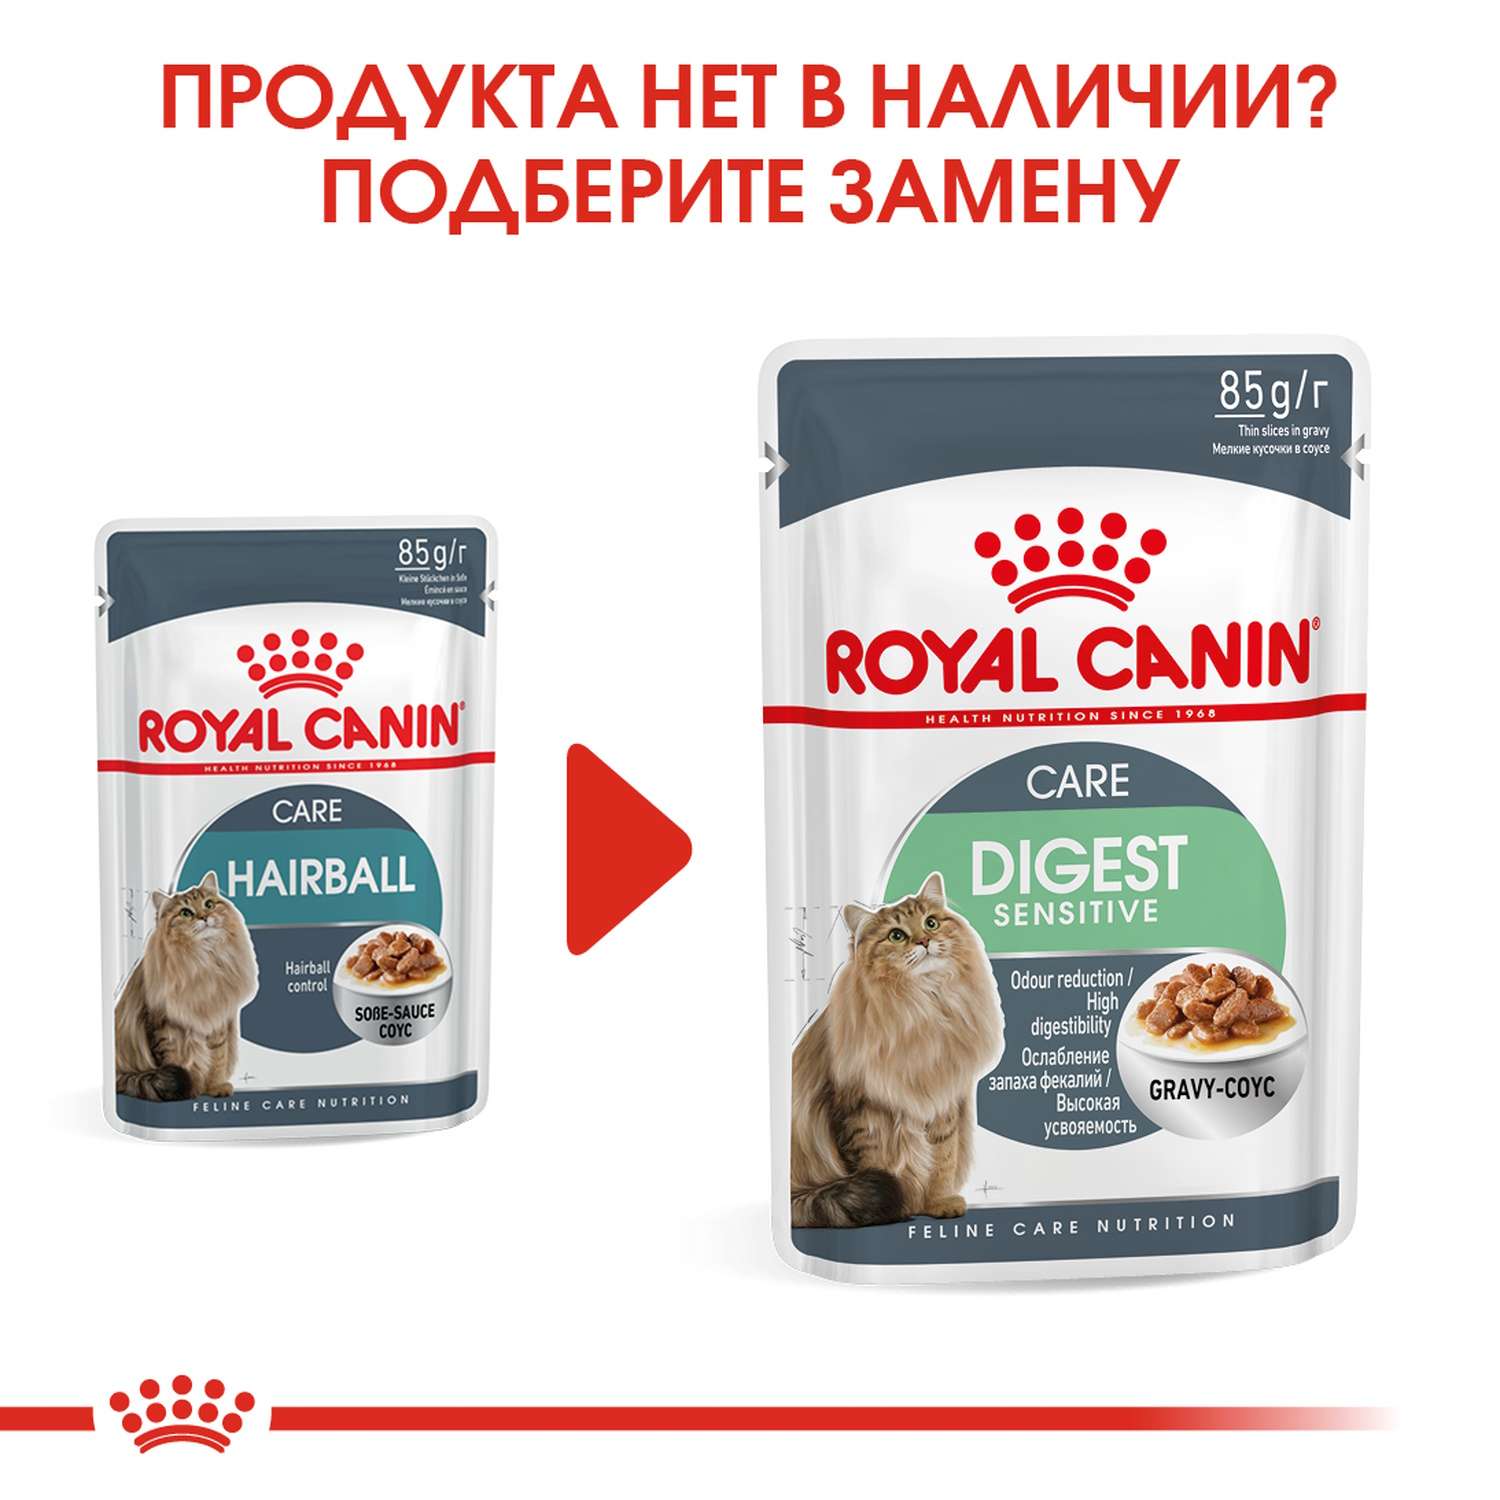 Корм влажный для кошек ROYAL CANIN Hairball Care 85г соус в целях профилактики образования волосяных комочков в желудочно-кишечном тракте пауч - фото 5